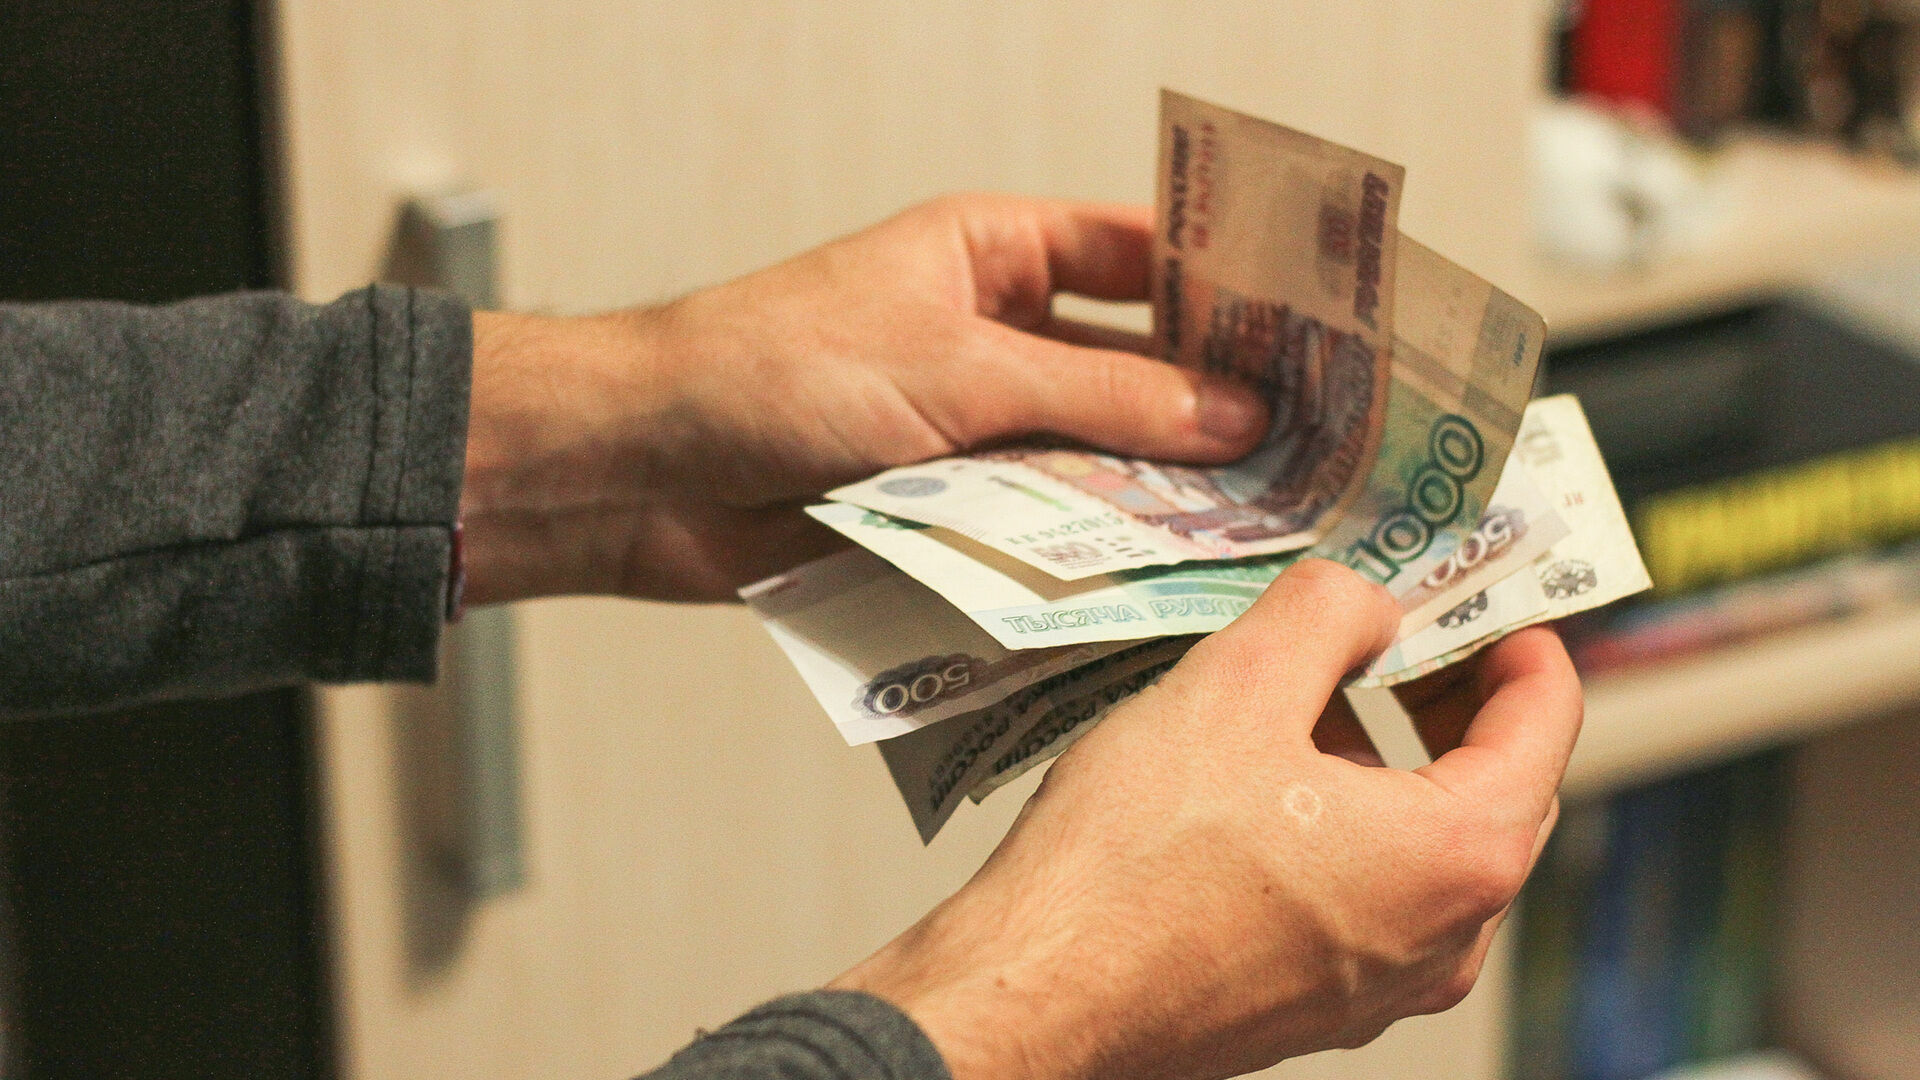 Администратор магазина в Сормове присвоил 200 тысяч рублей